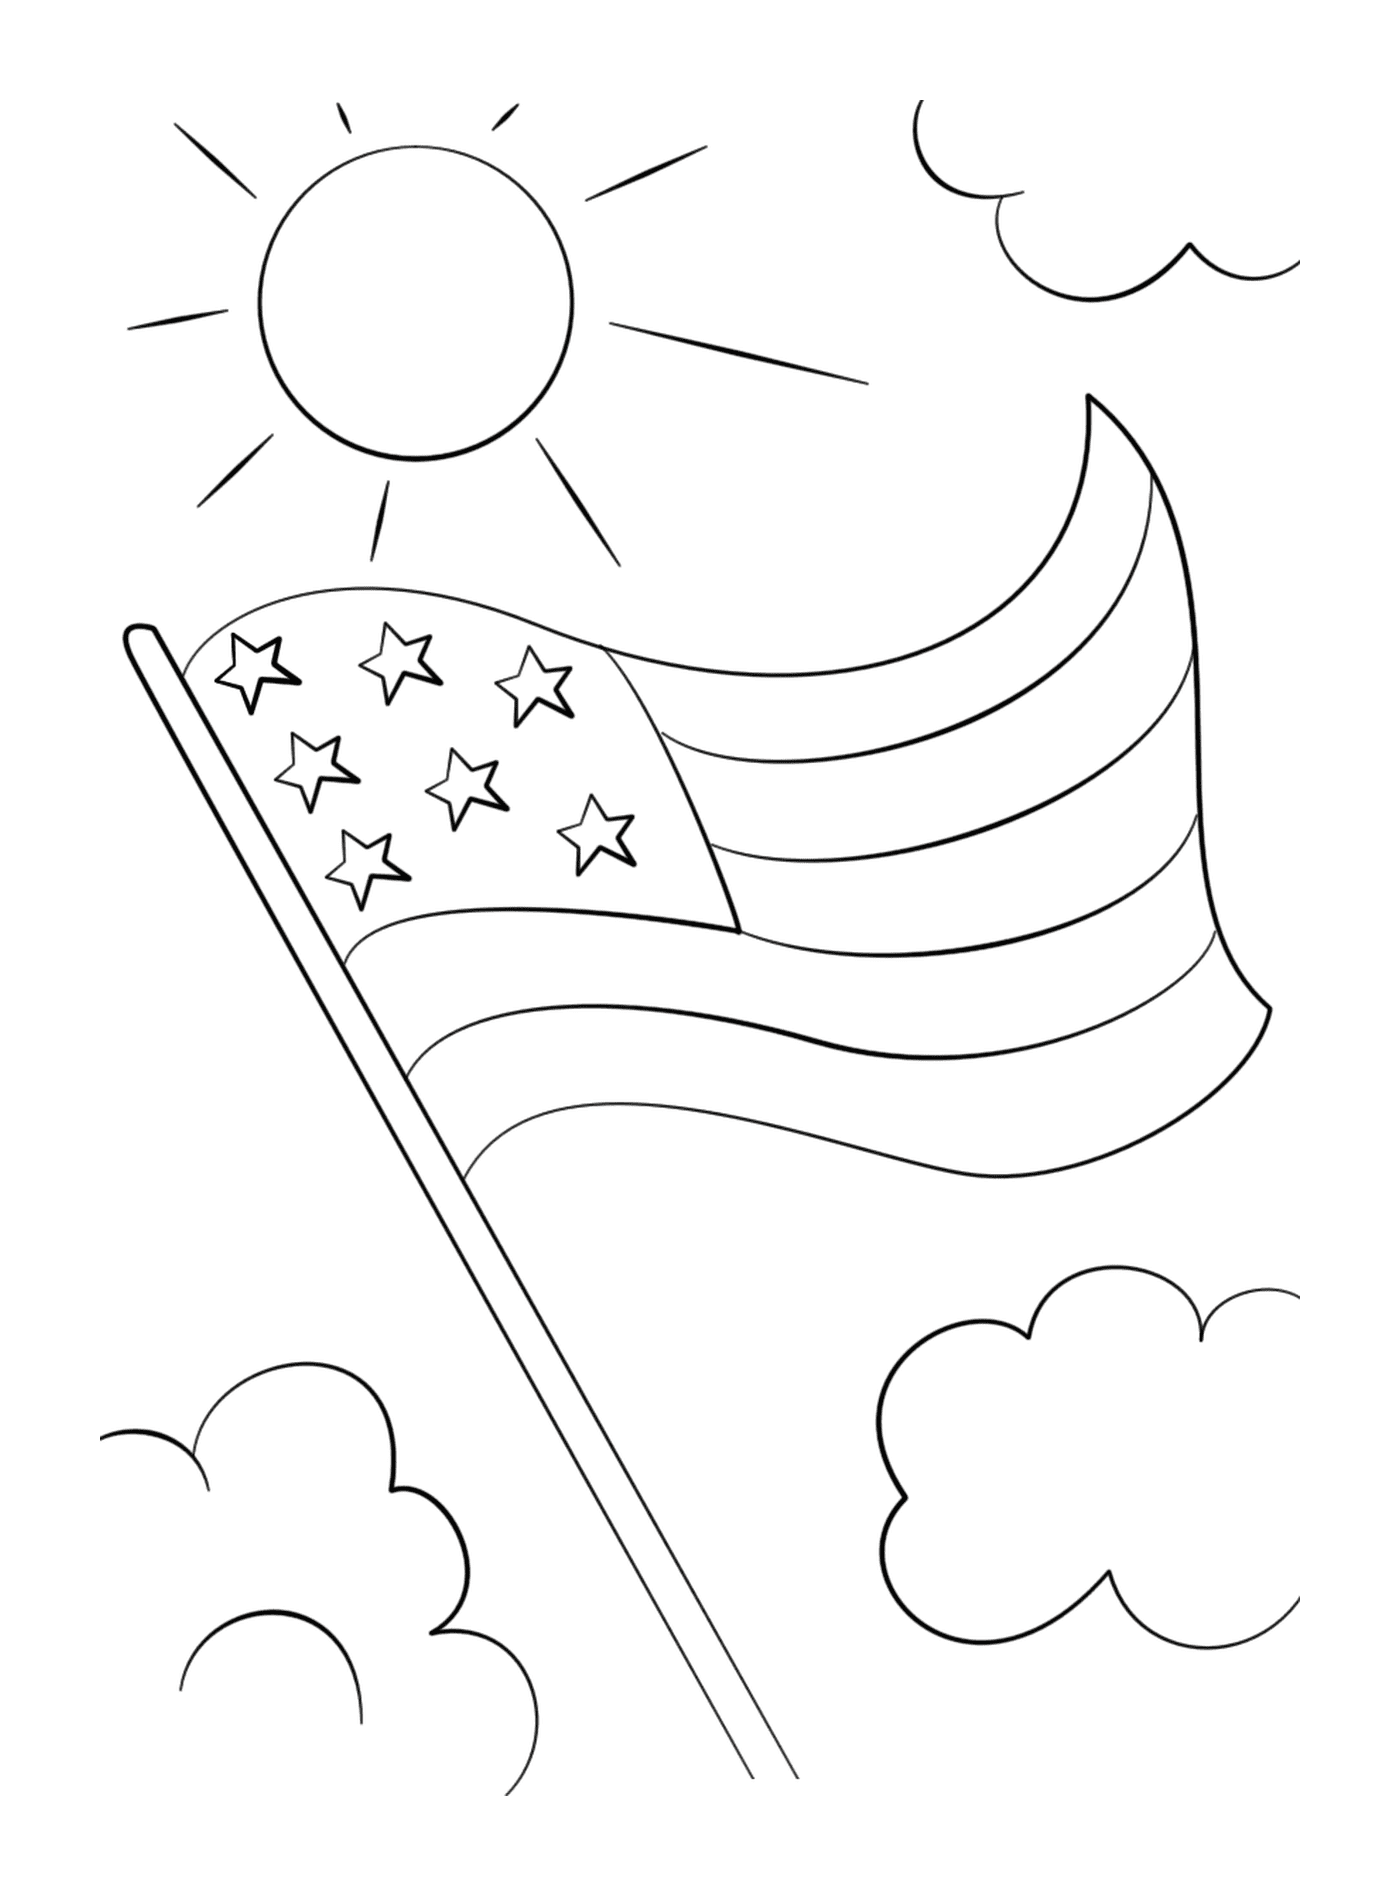  星星飘在天空的美国国旗 